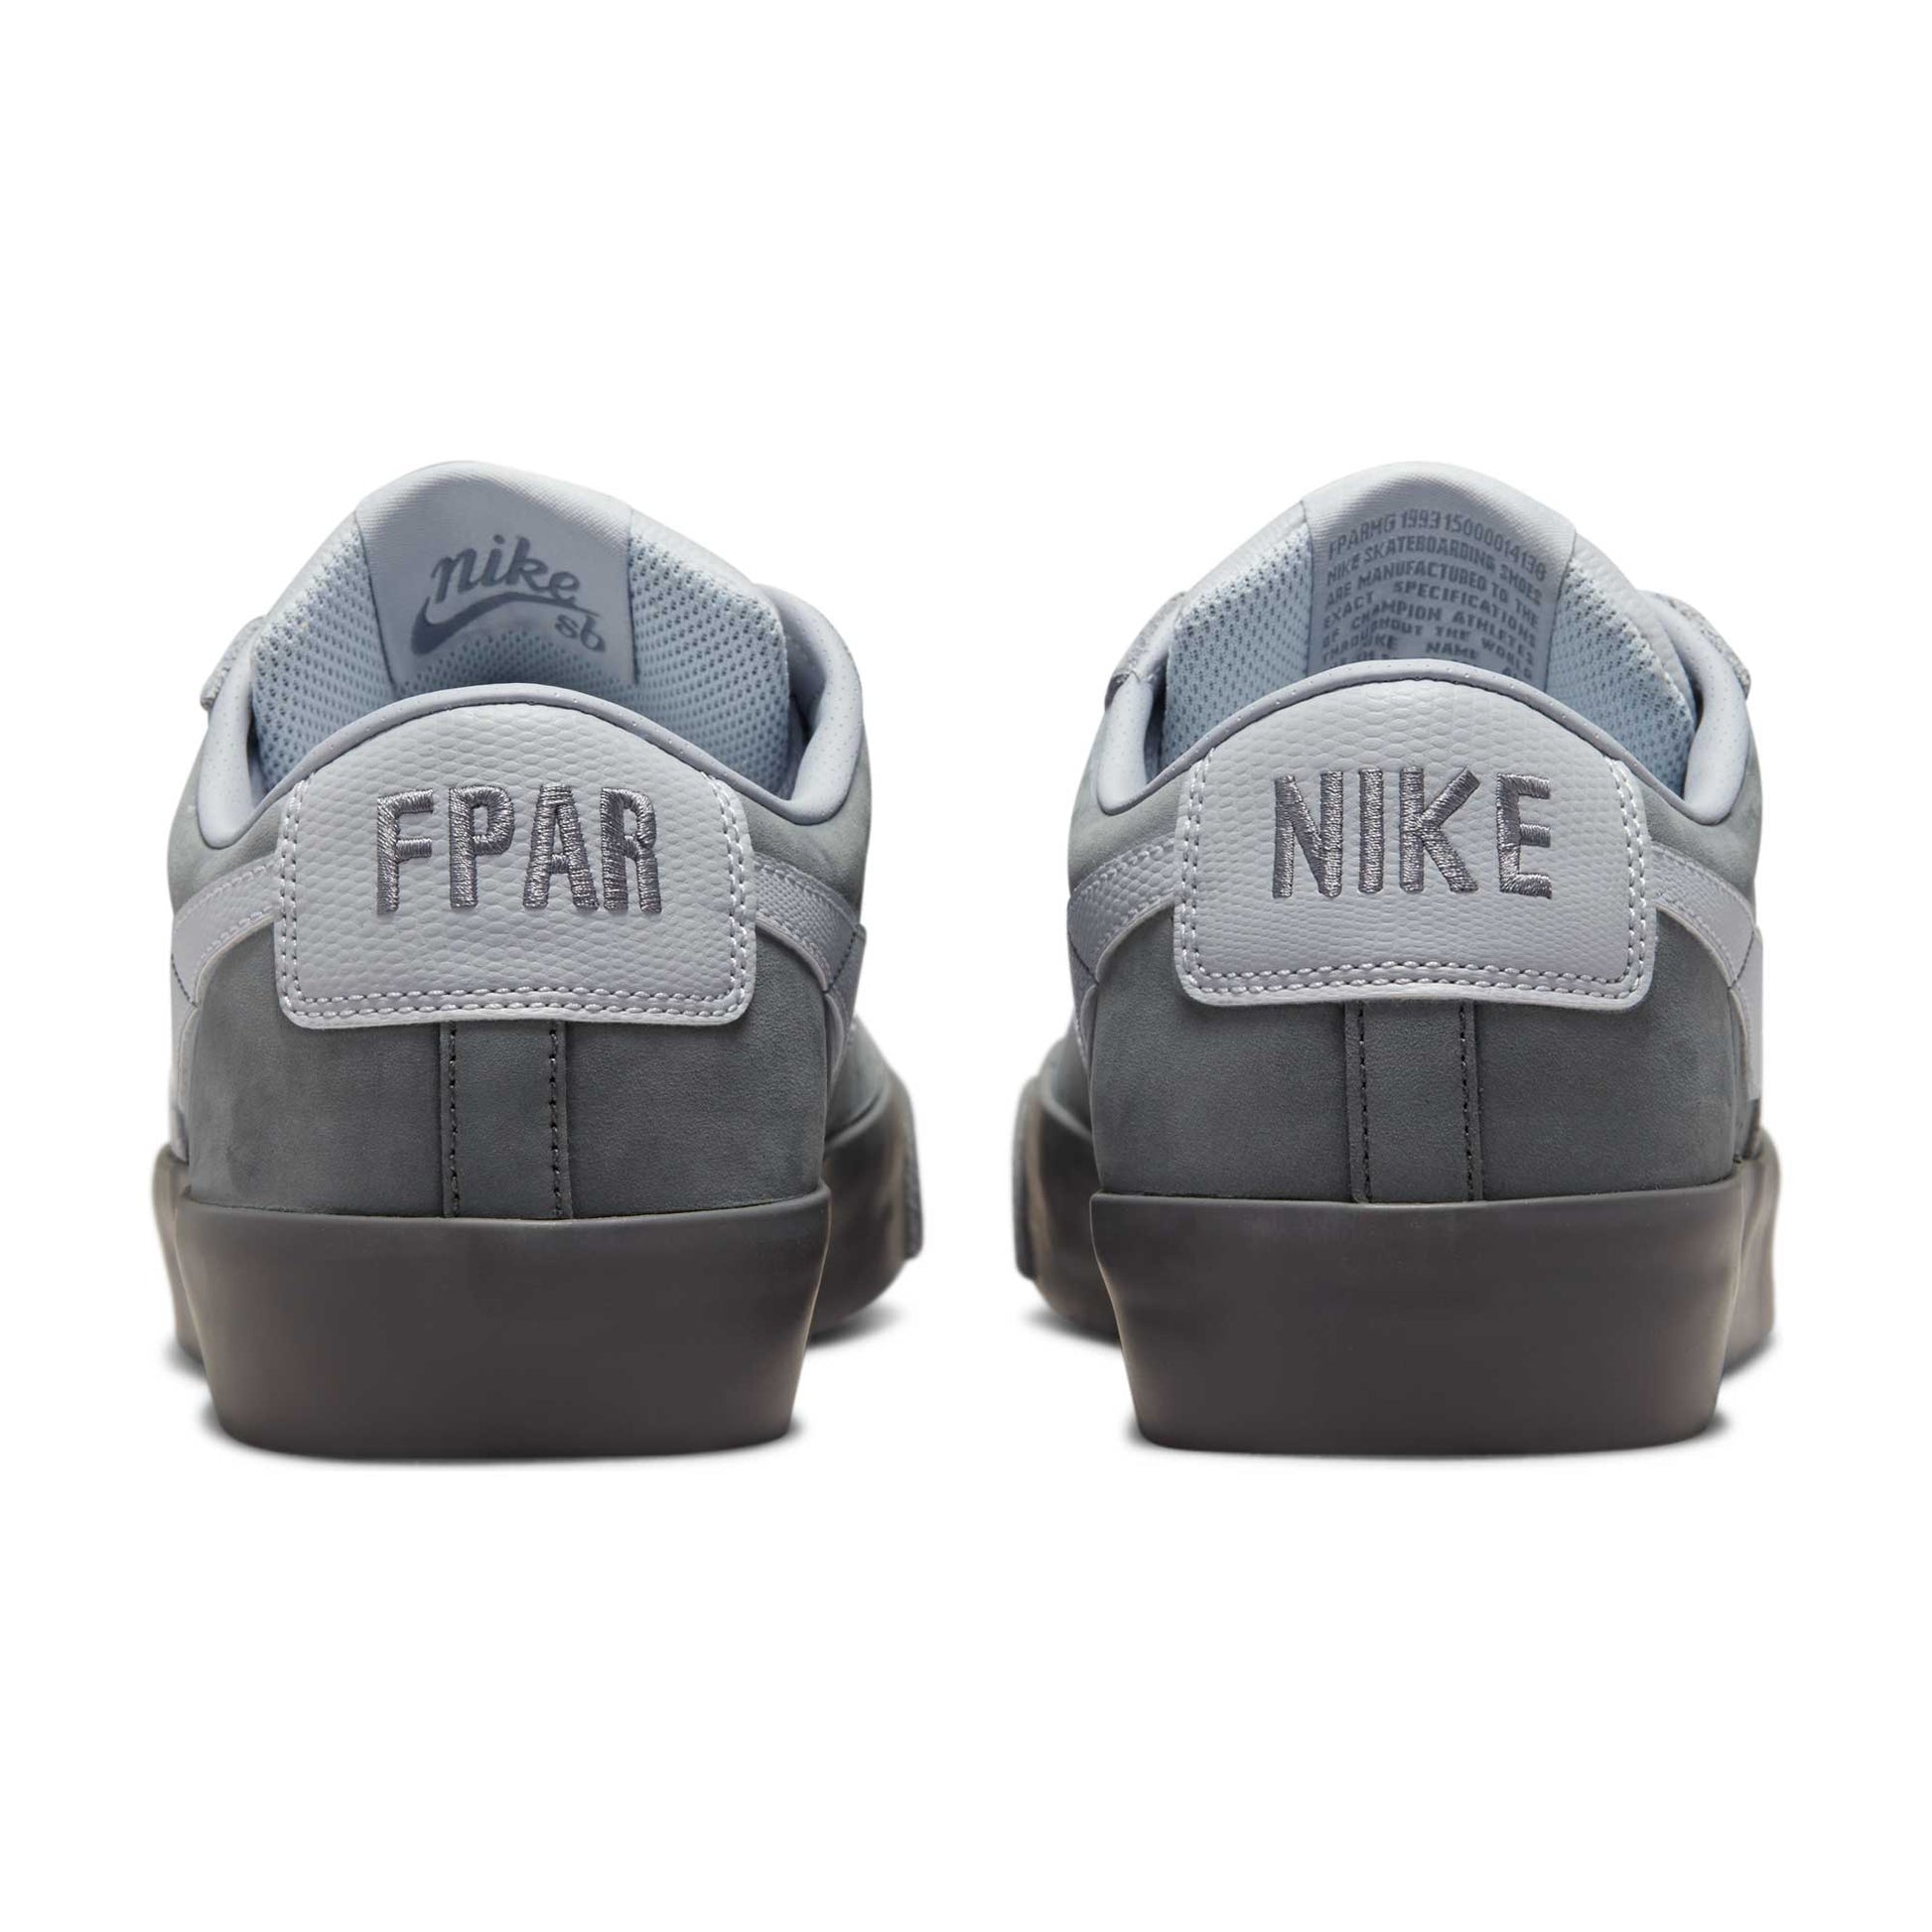 Nike SB FPAR Zoom Blazer Low, cool grey/wolf grey - Tiki Room Skateboards - 2